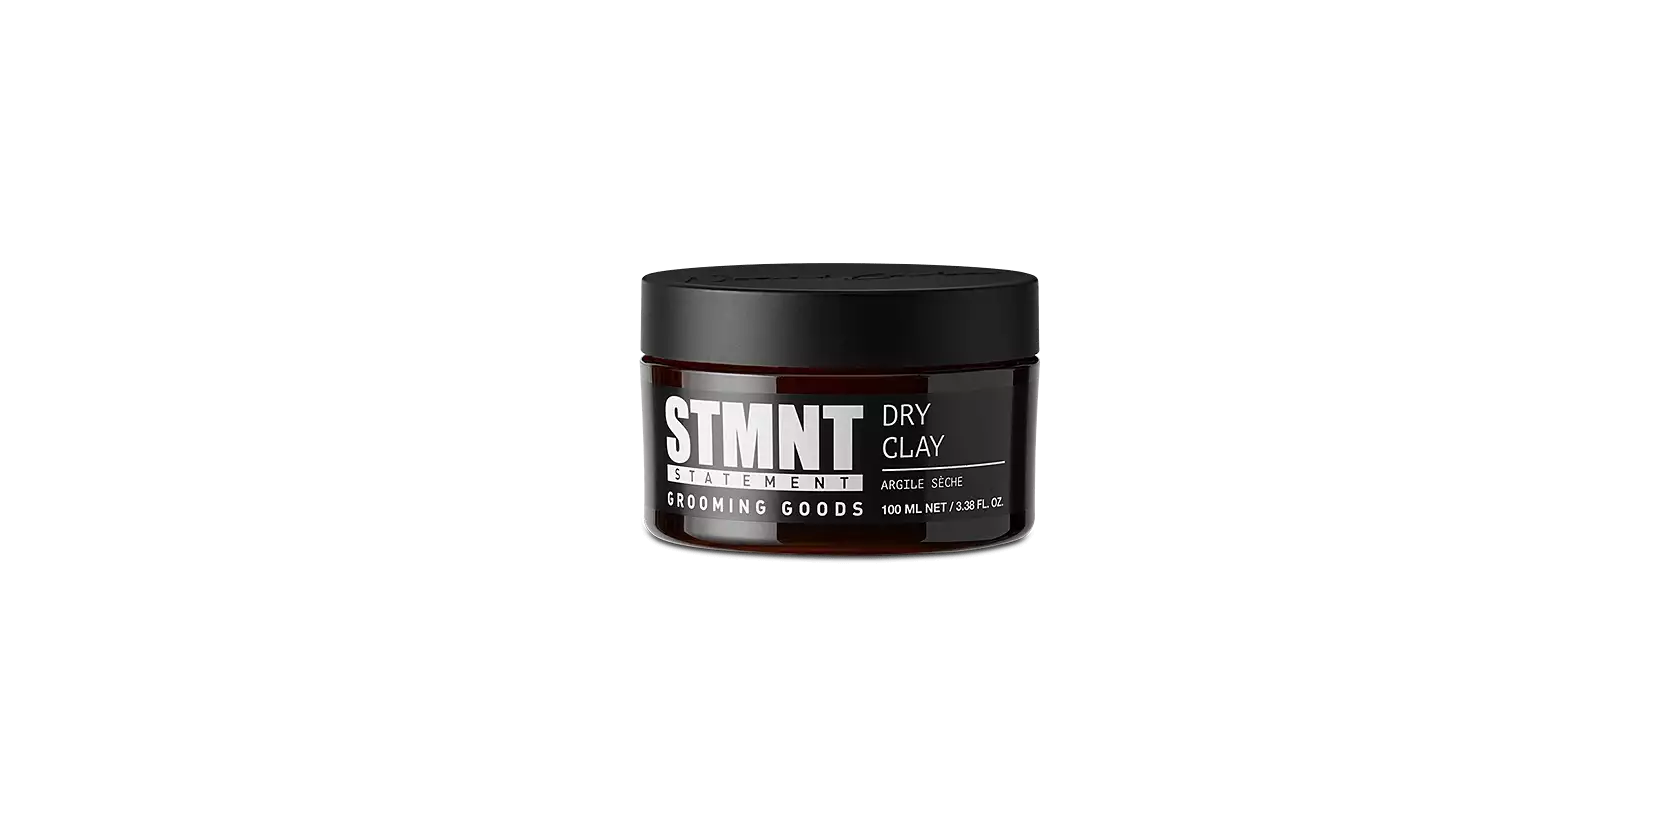 STMNT Grooming Goods Dry Clay 1.1oz